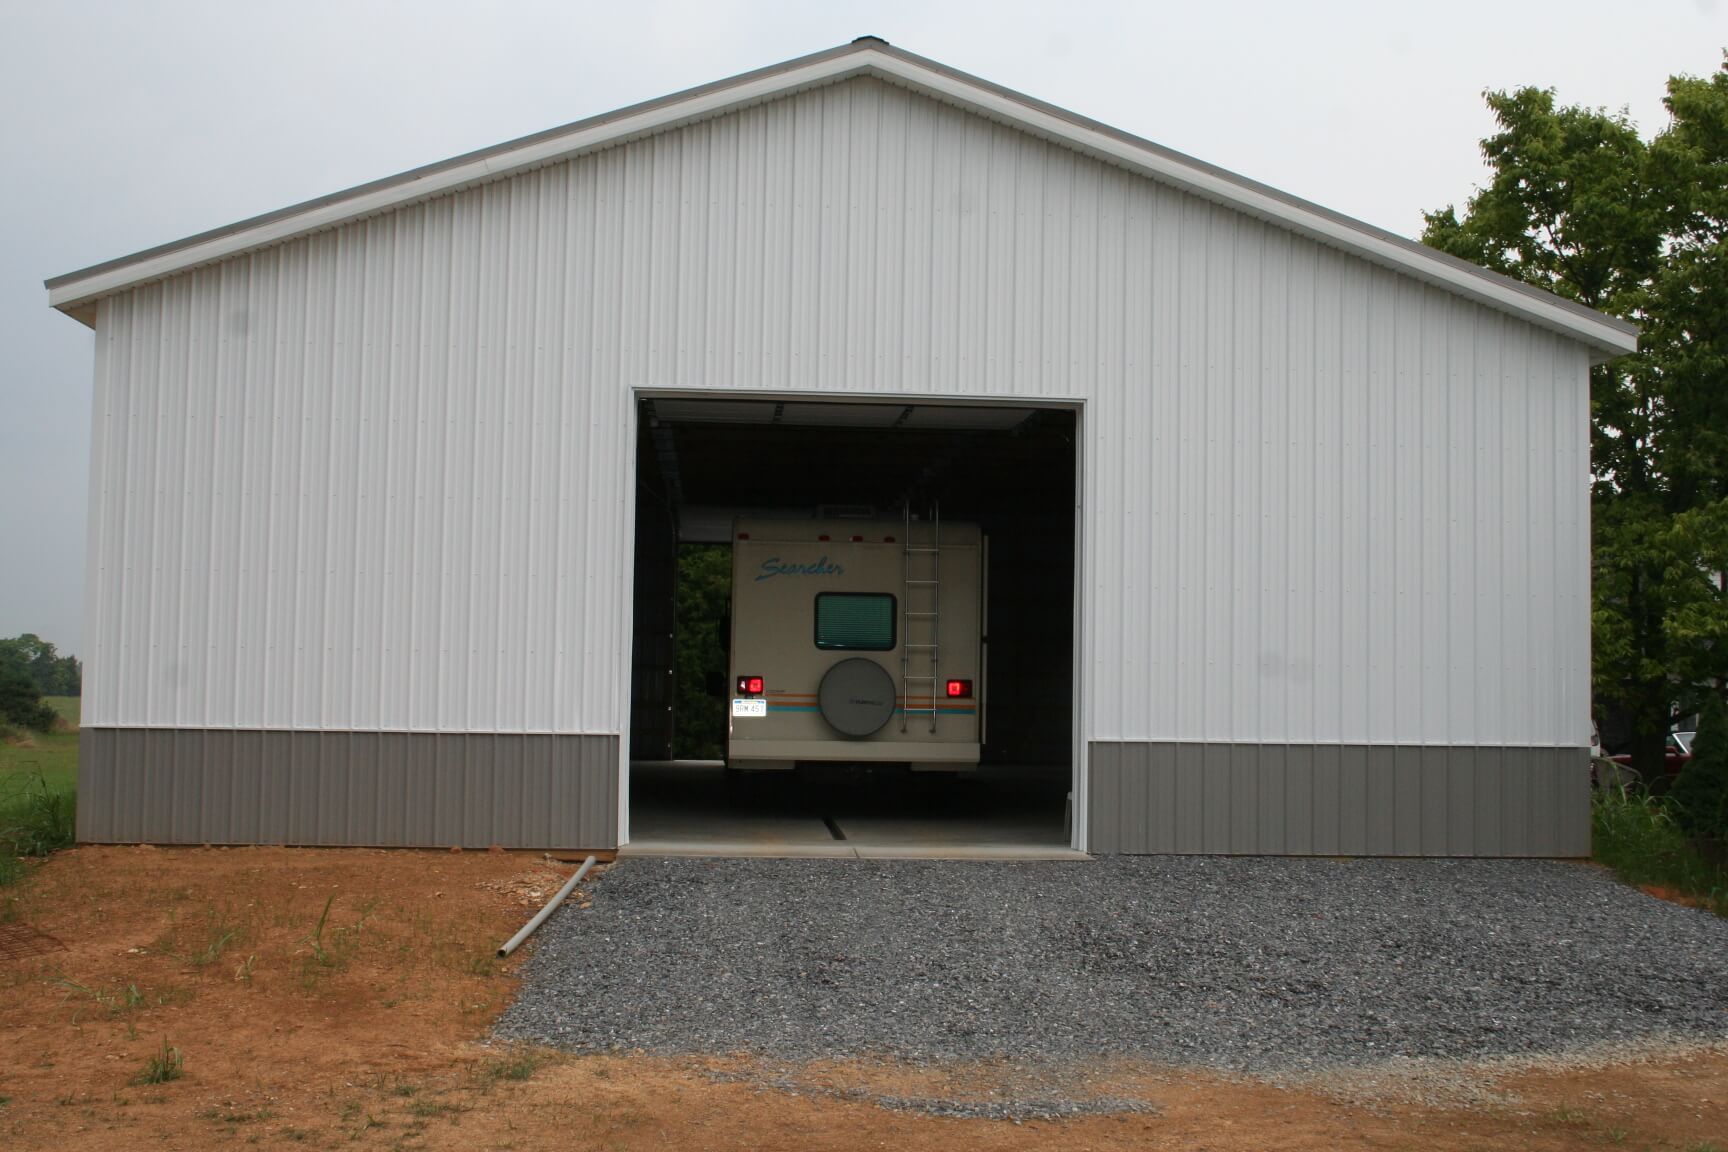 0’ x 60’ x 18’ RV Storage Pole Building